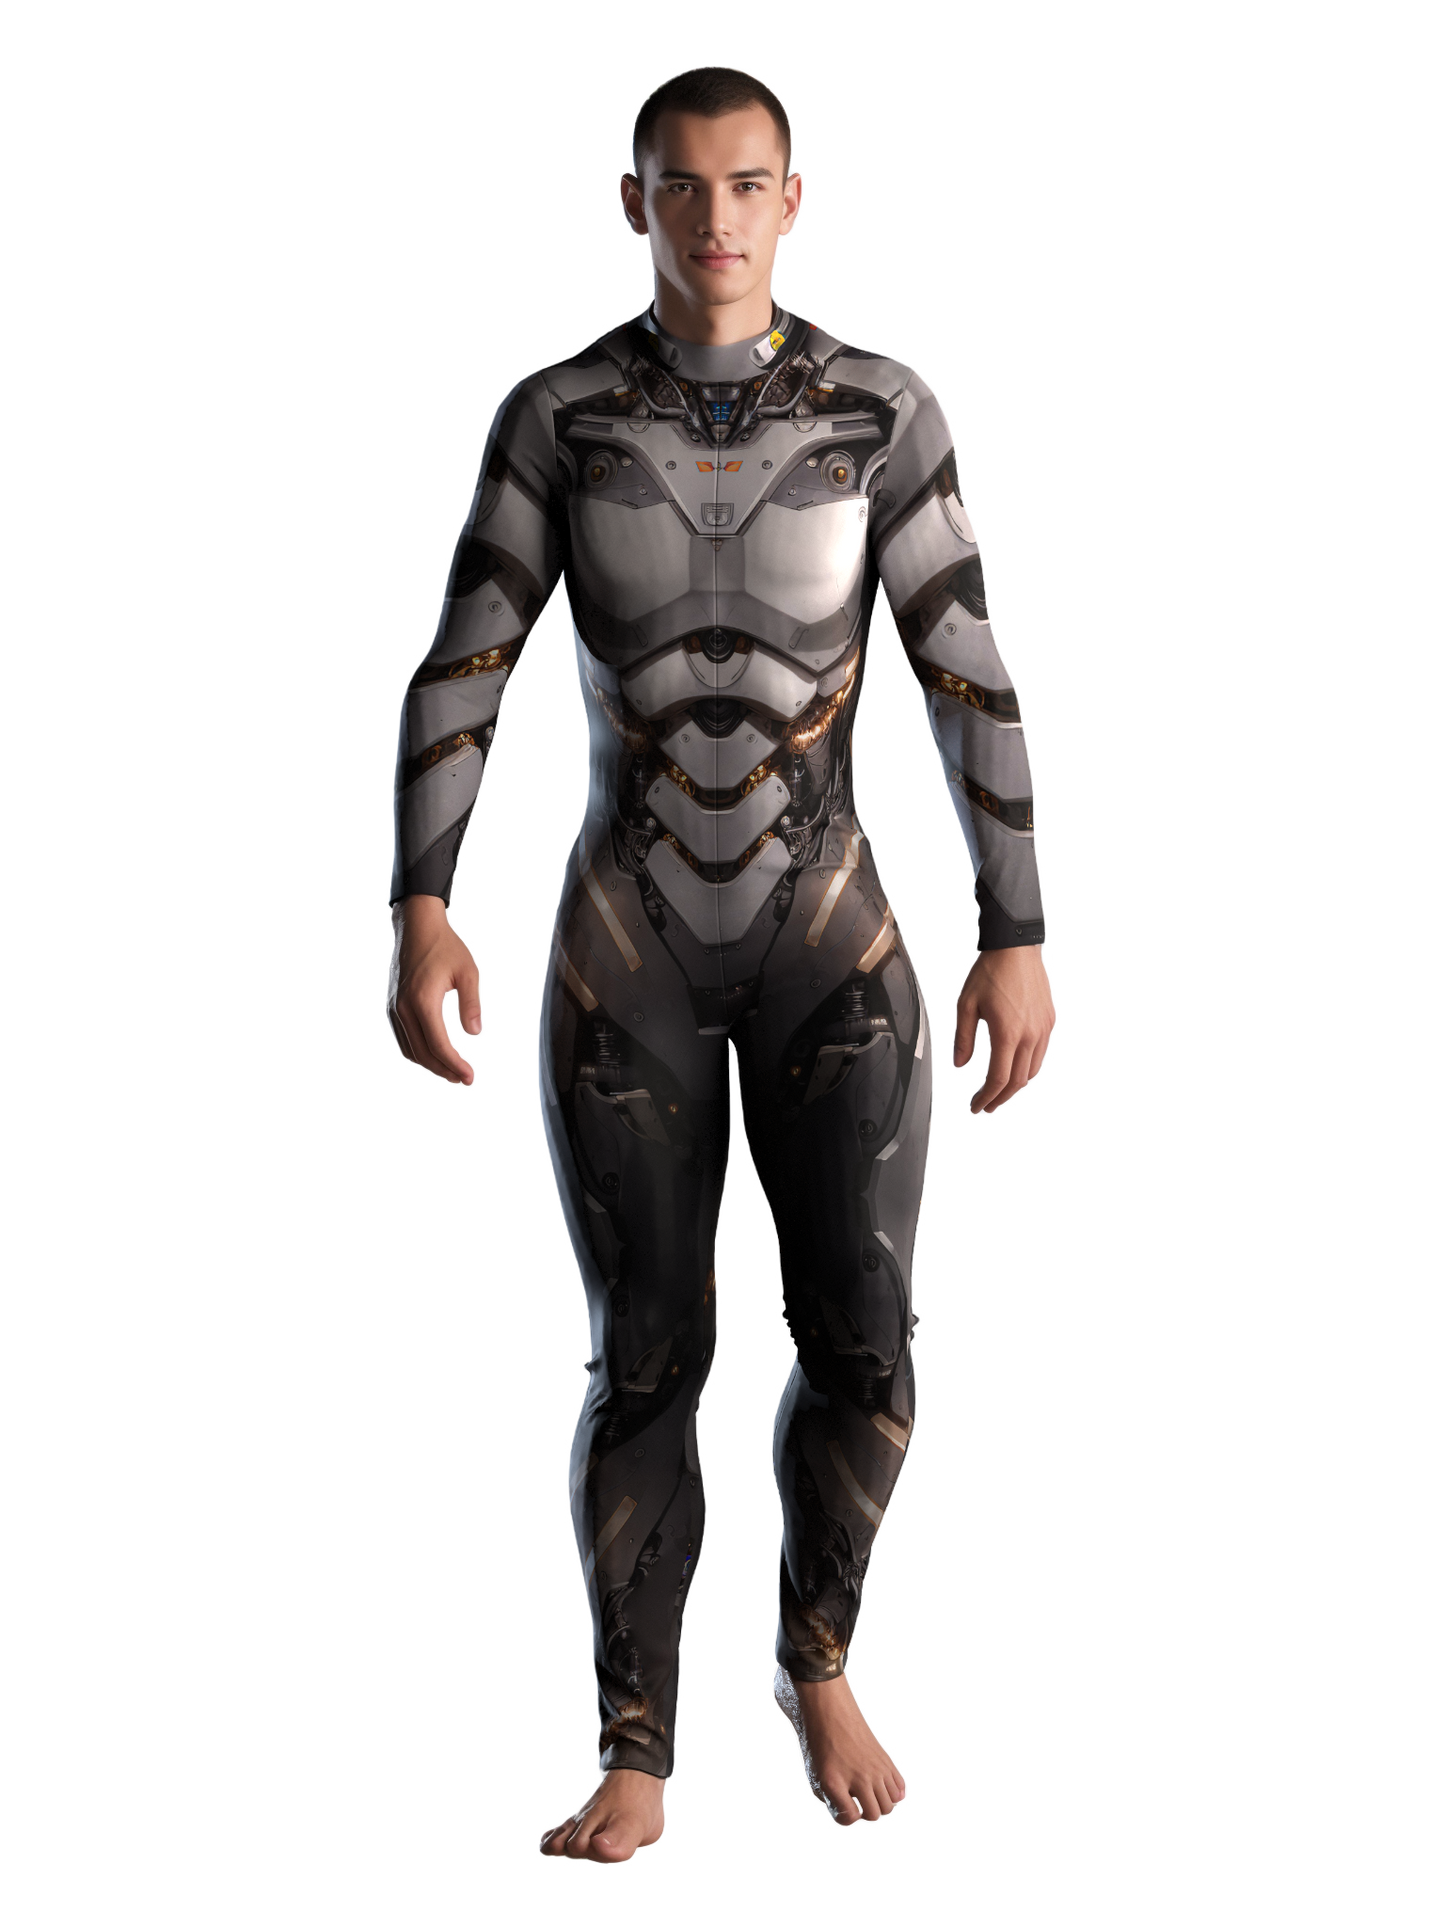 Cyborg Robot Costume Men (Custom Fit Available), Rave Costume Men, Festival Bodysuit Men, Rave Bodysuit Men, Halloween Armor Costume, A98M